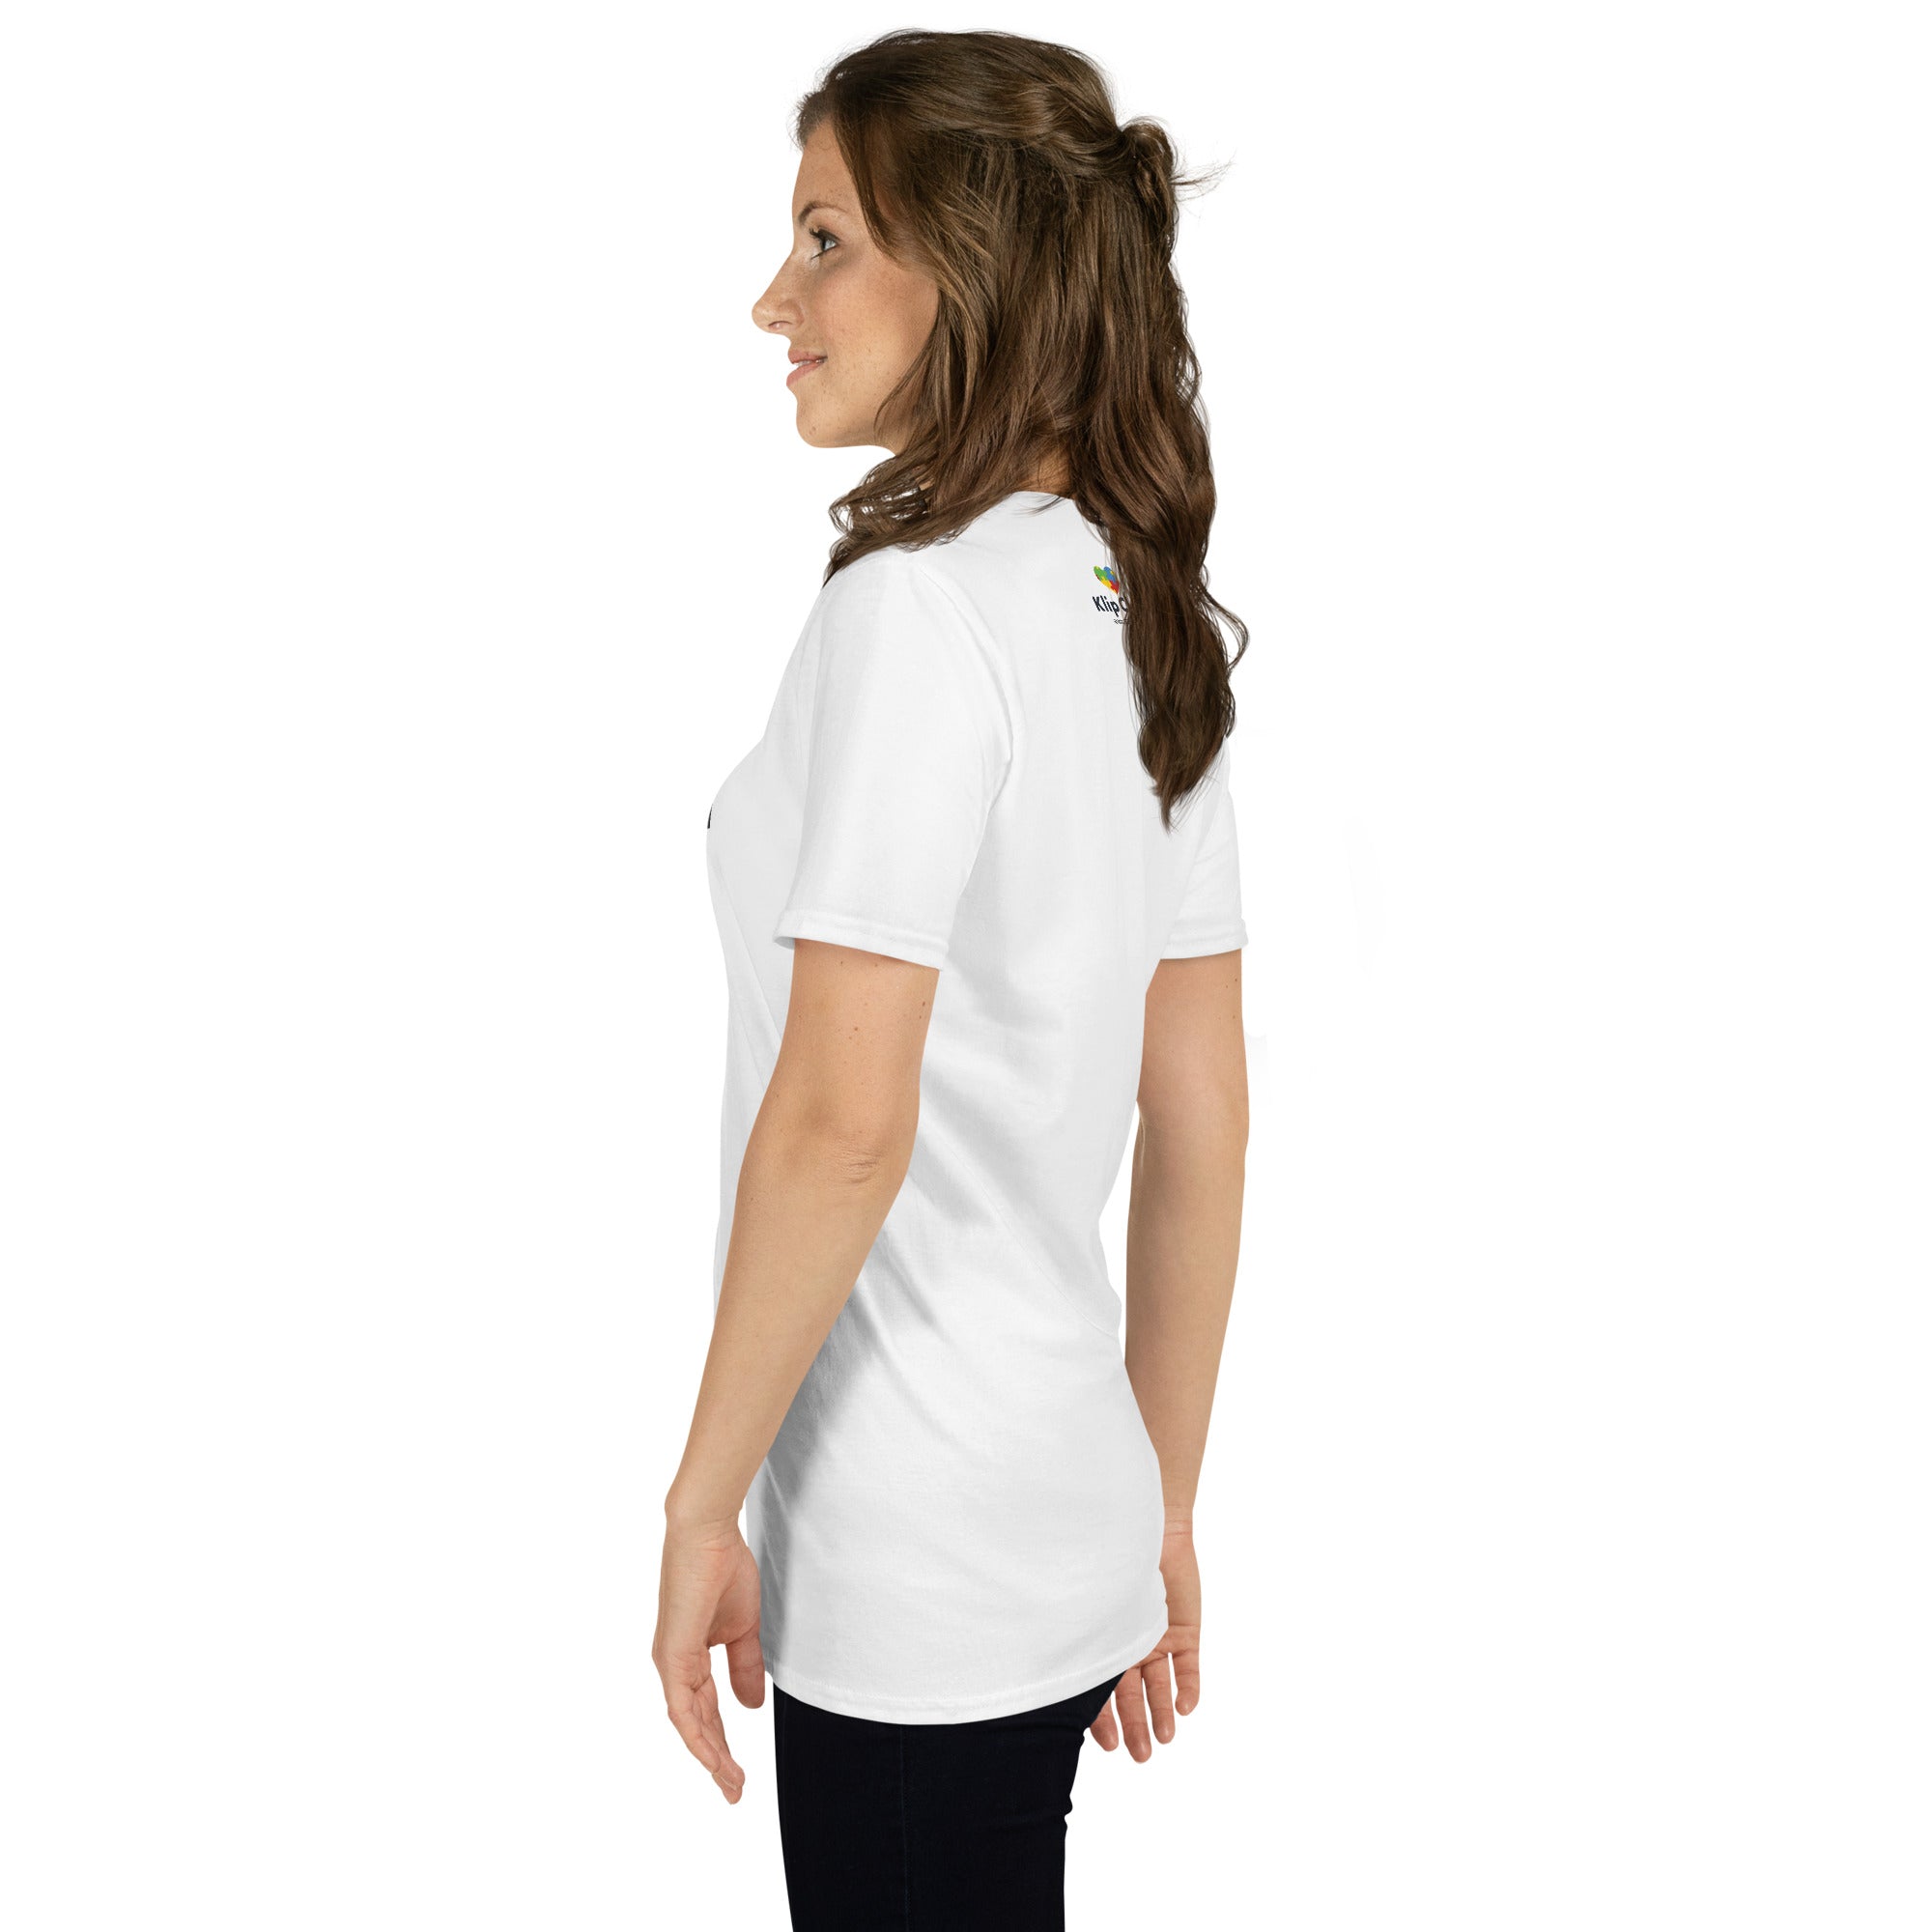 Short-Sleeve Unisex T-Shirt- Think before you judge